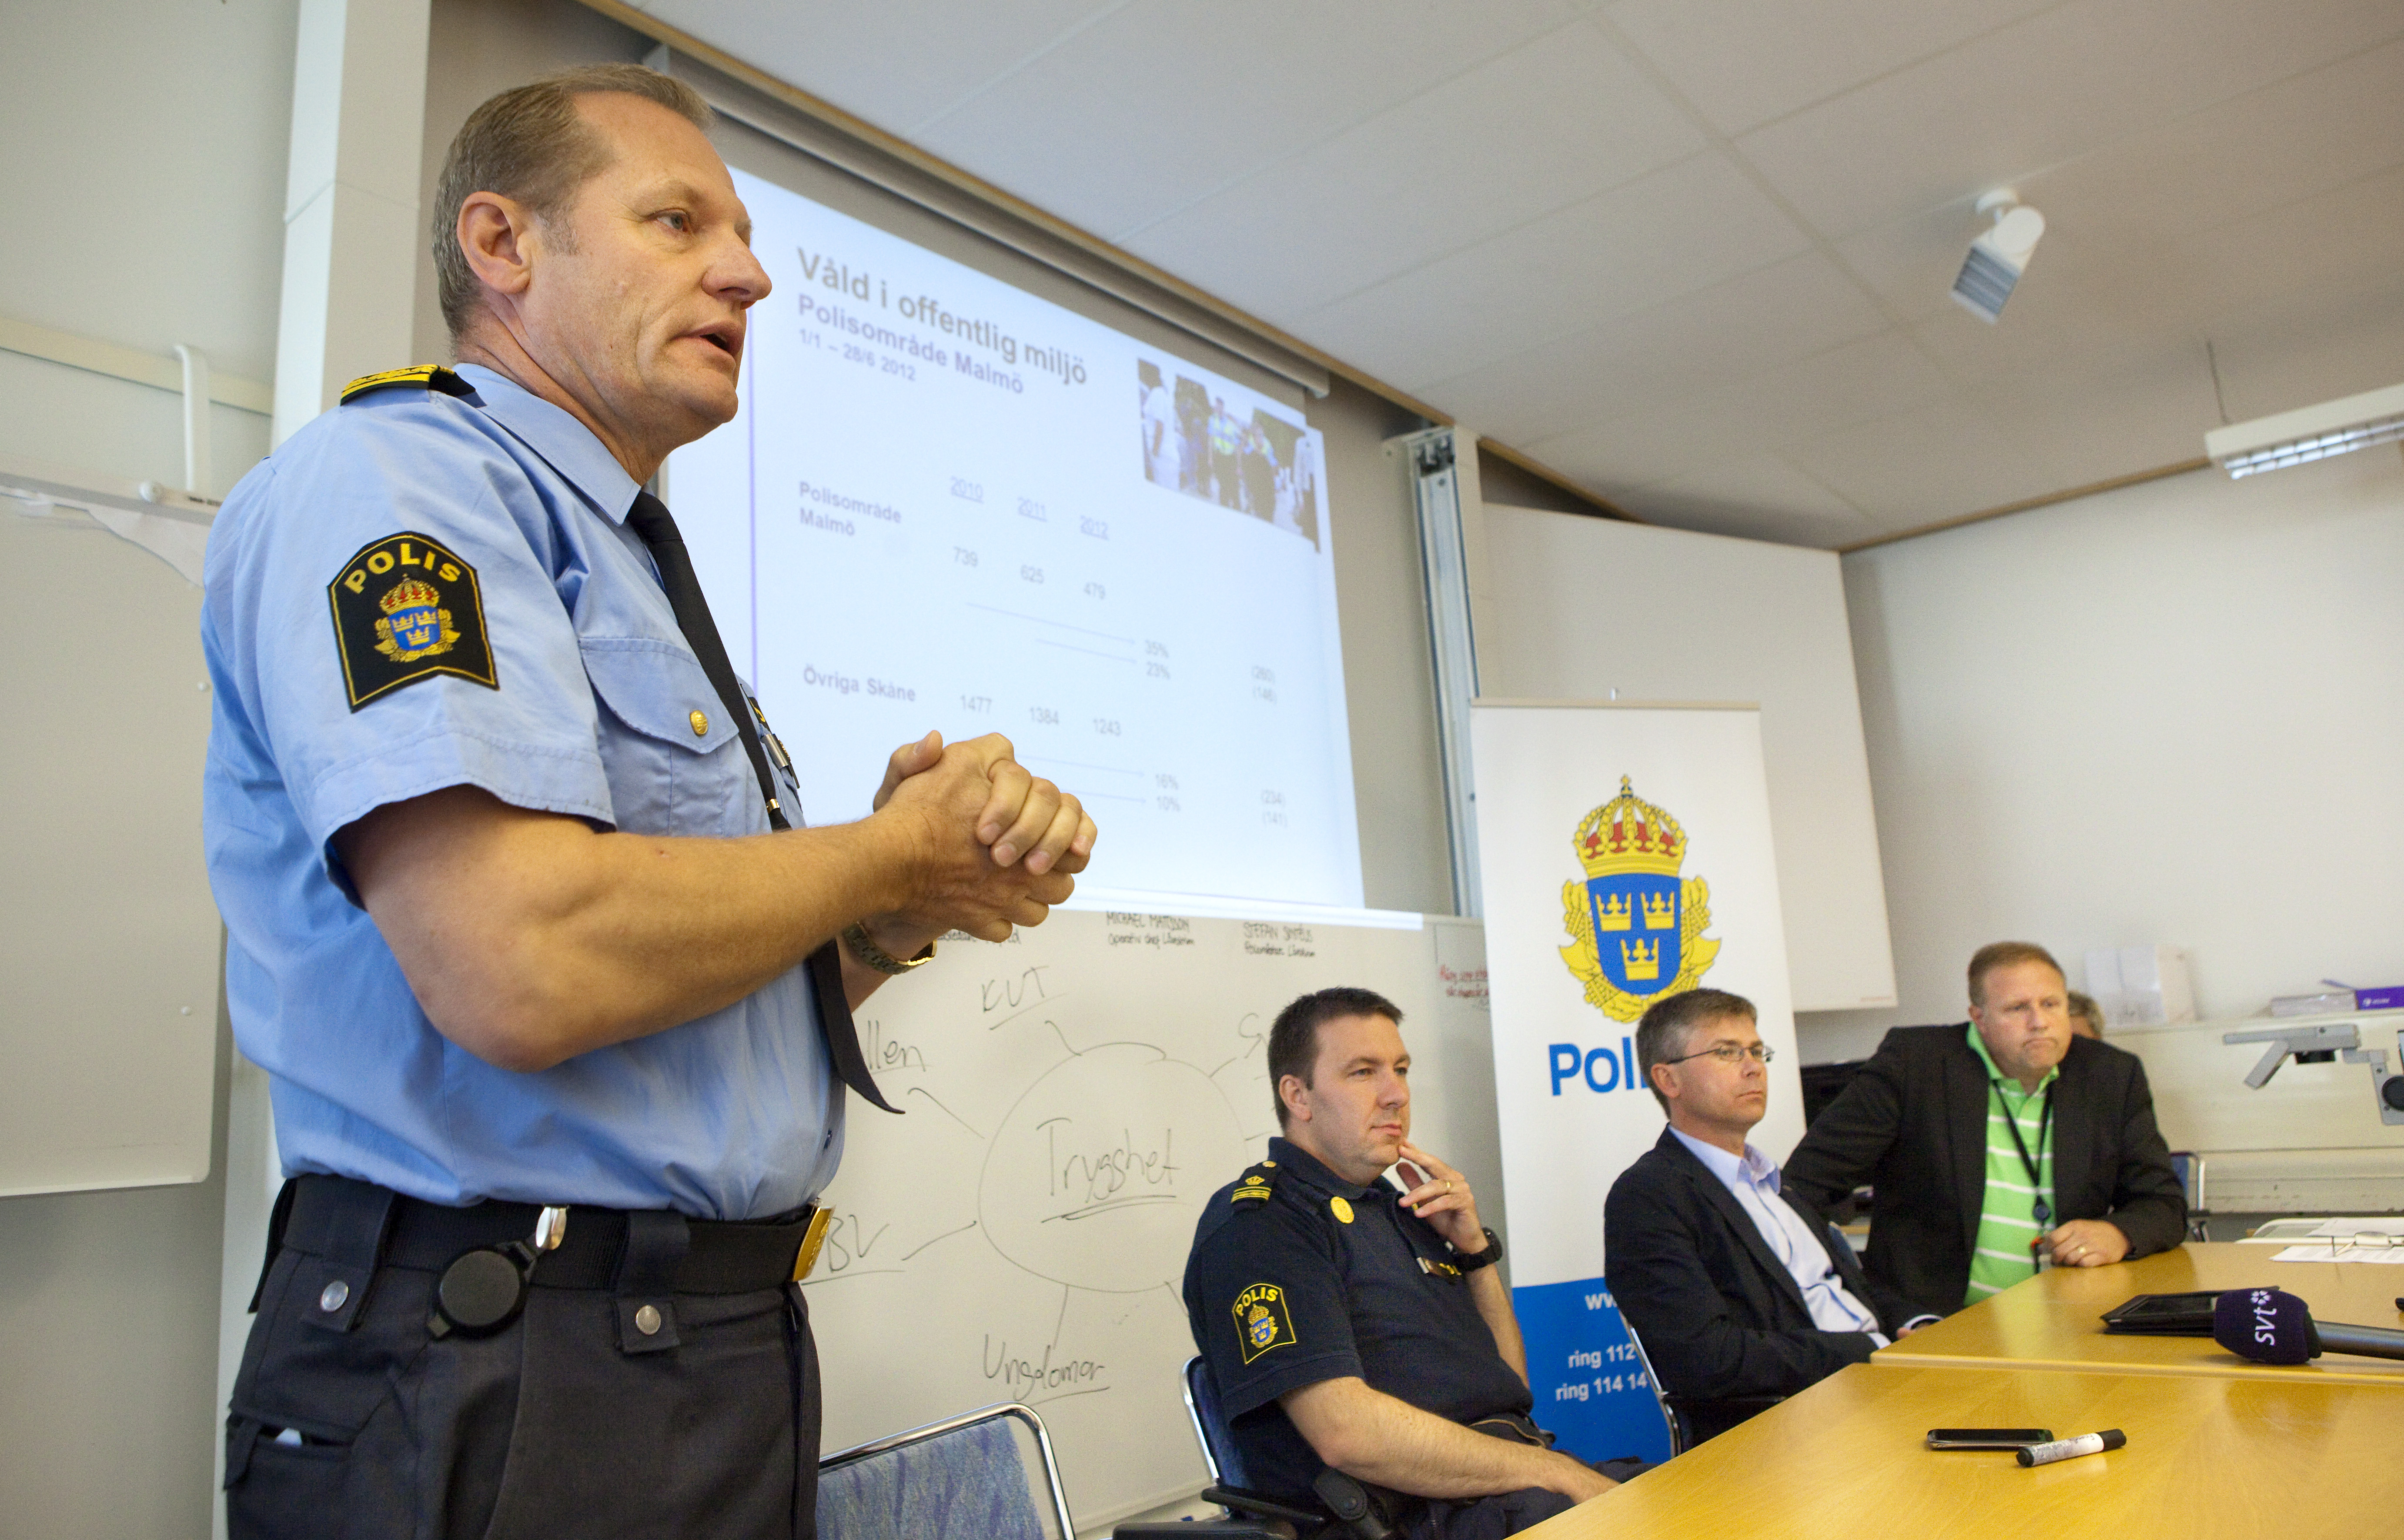 Ulf Sempert polismästare i Malmö, Patrik Johansson insatsledare Alfred, Michael Mattsson opertaiv chef länskrim och Stefan Sintéus polismästare länskrim.